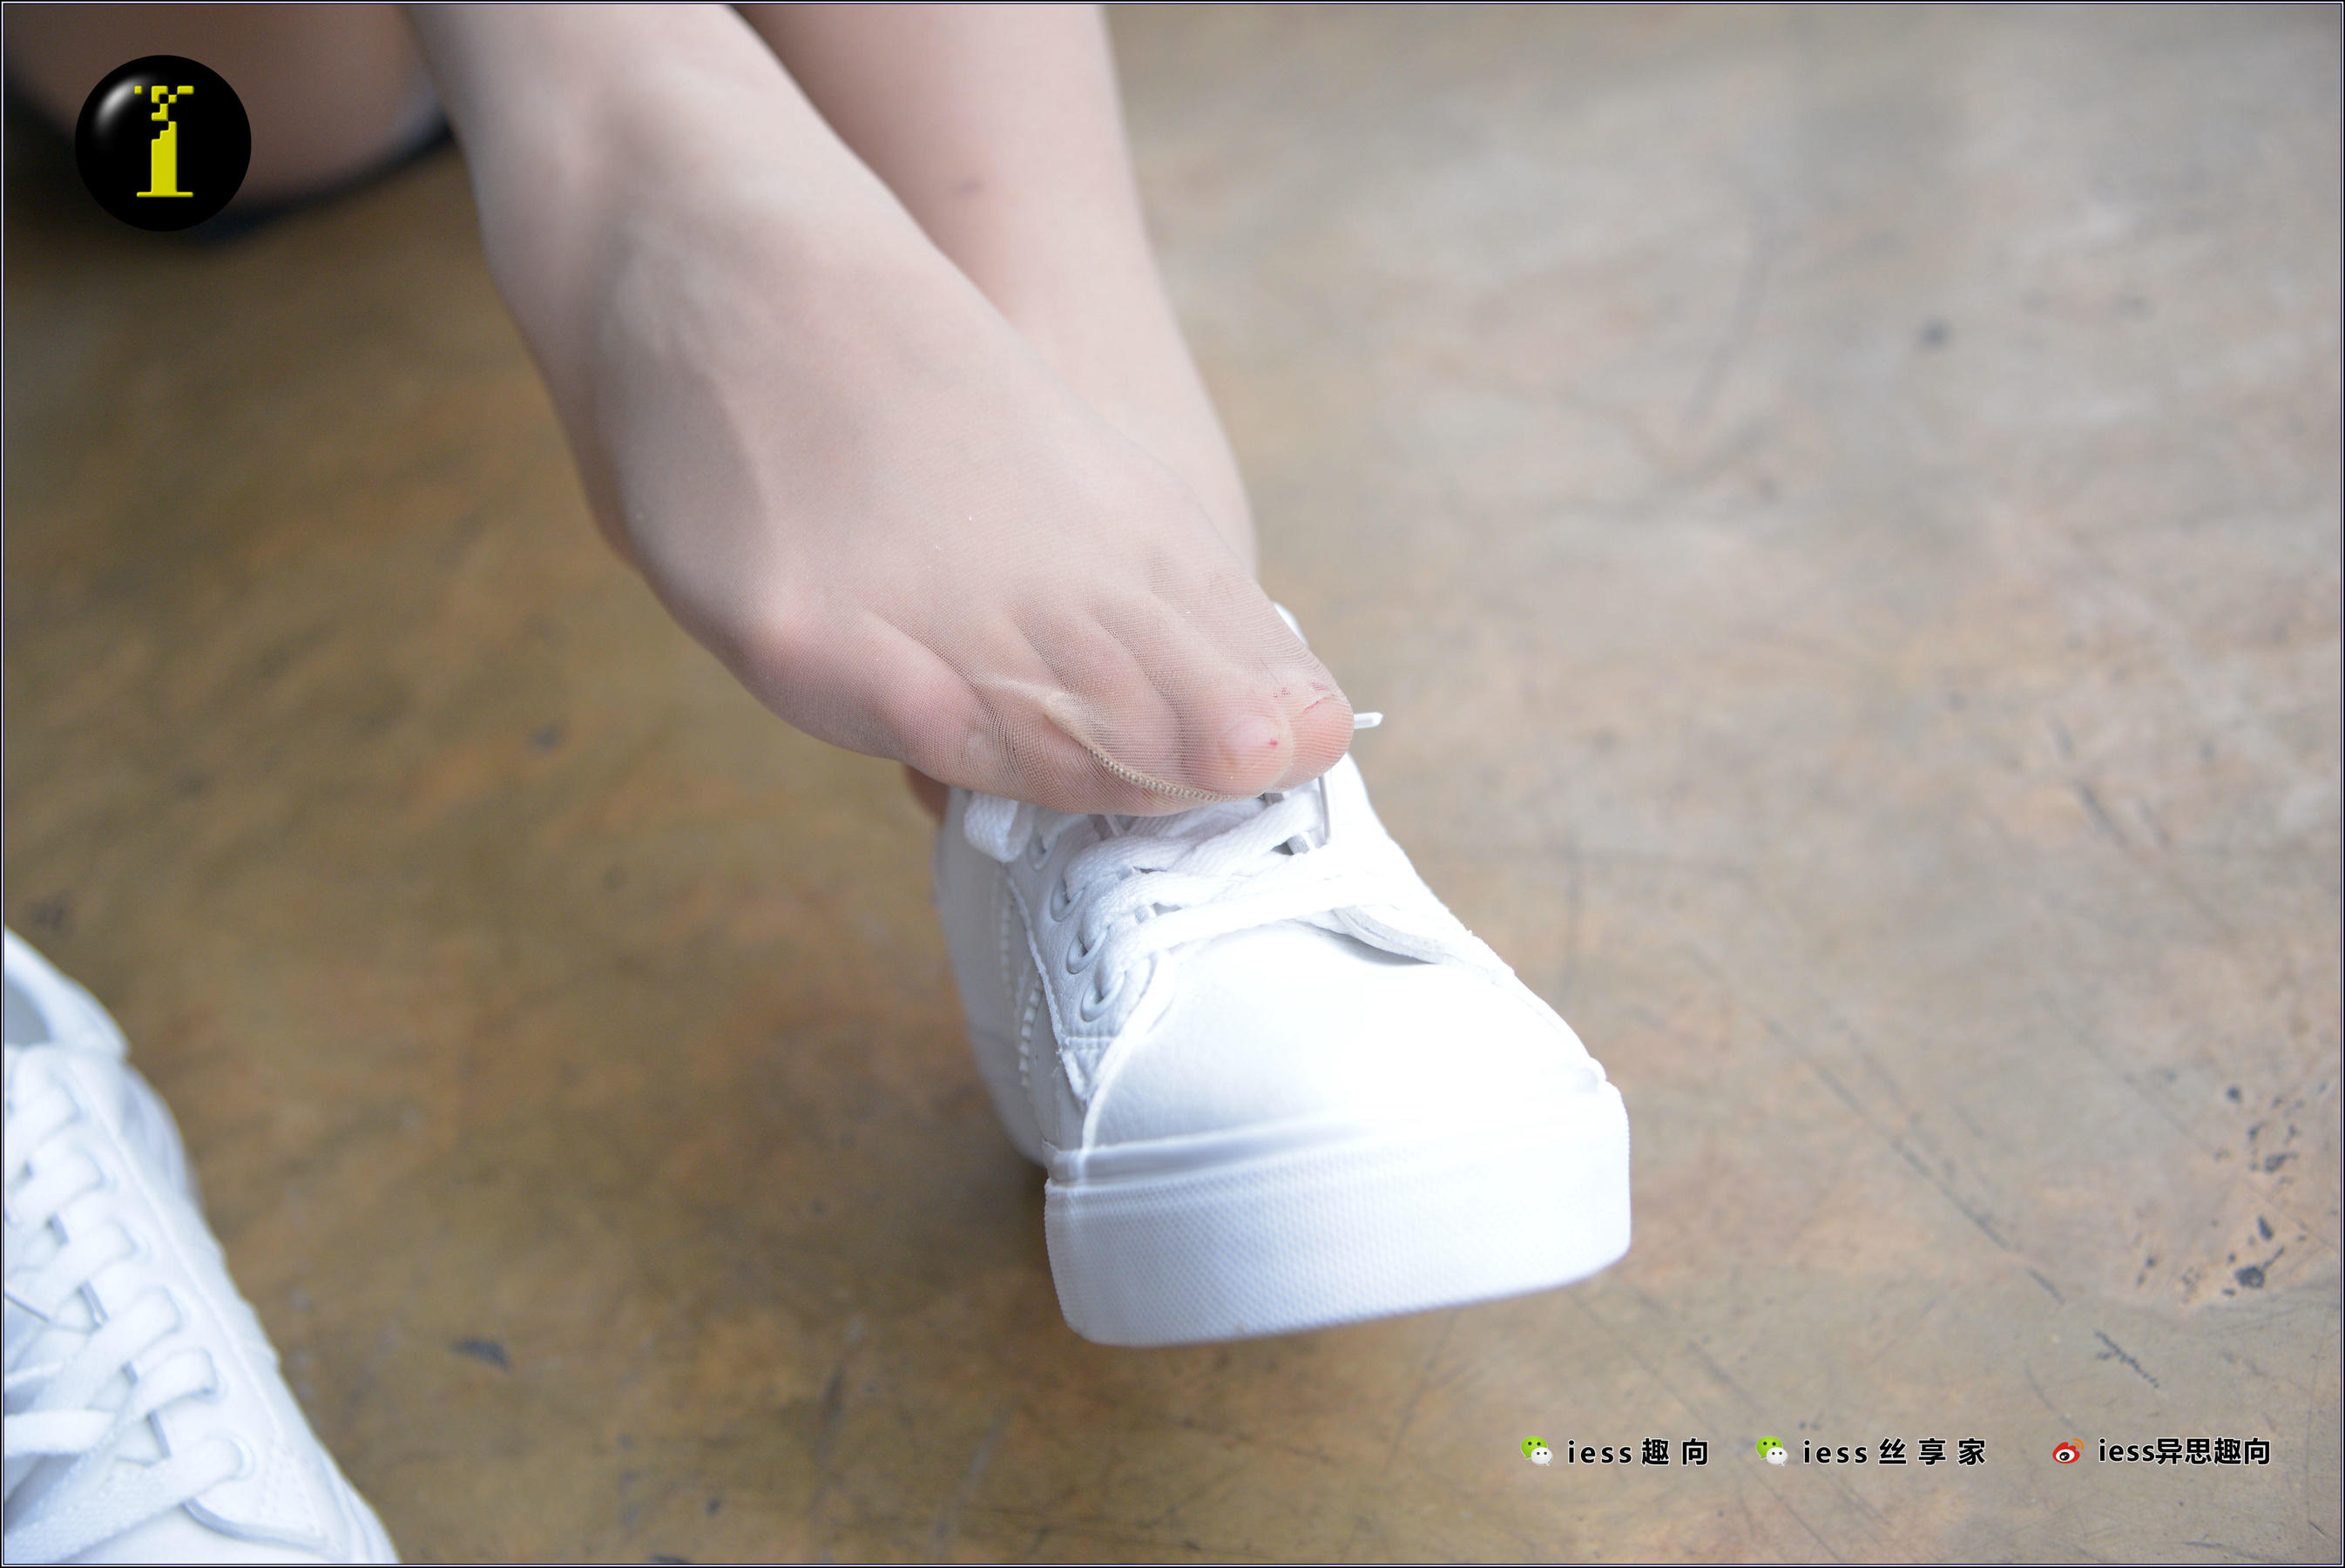 [IESS普惠集] 087 模特晶晶 《我的小白鞋趣向(特写)》